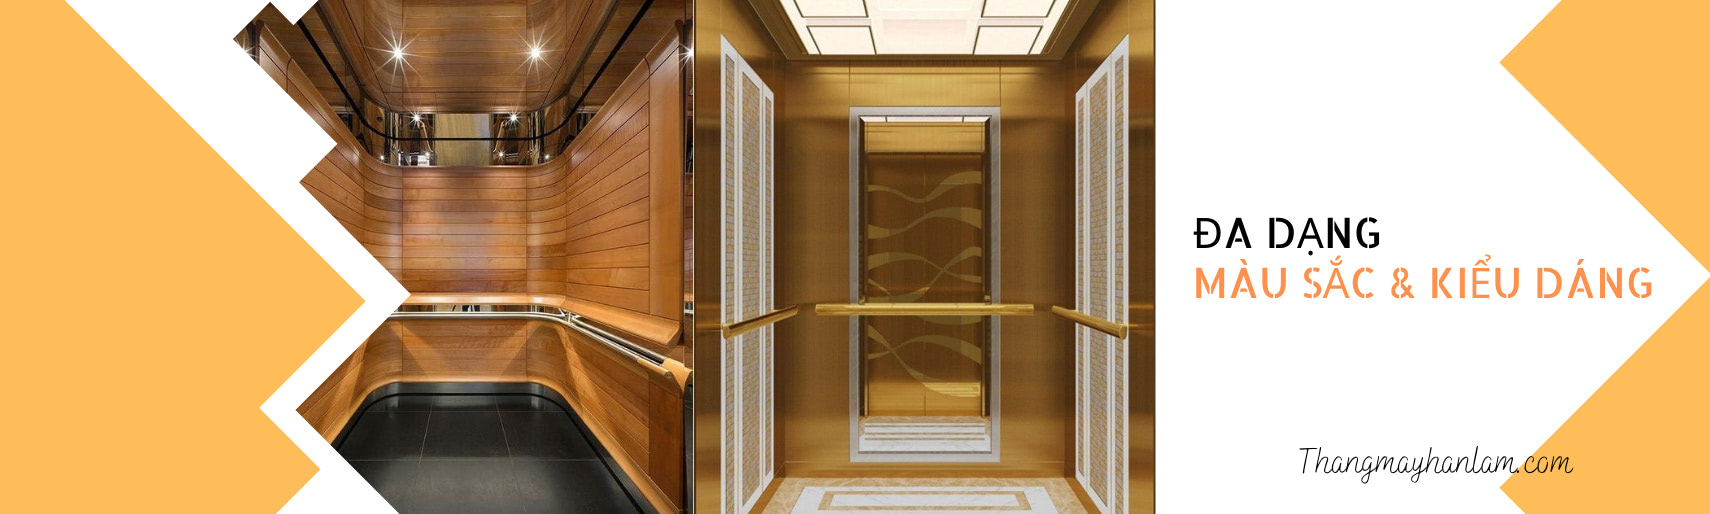 Thiết kế sảnh thang máy - Sảnh thang máy của một tòa nhà chính là điểm nhấn đầu tiên khi bạn bước vào. Thiết kế sảnh thang máy đẹp mắt sẽ mang đến cảm giác sang trọng, tinh tế và chuyên nghiệp. Bạn còn chần chừ gì nữa? Hãy click ngay vào hình ảnh liên quan để khám phá thế giới thiết kế thang máy đẹp mắt nhé!